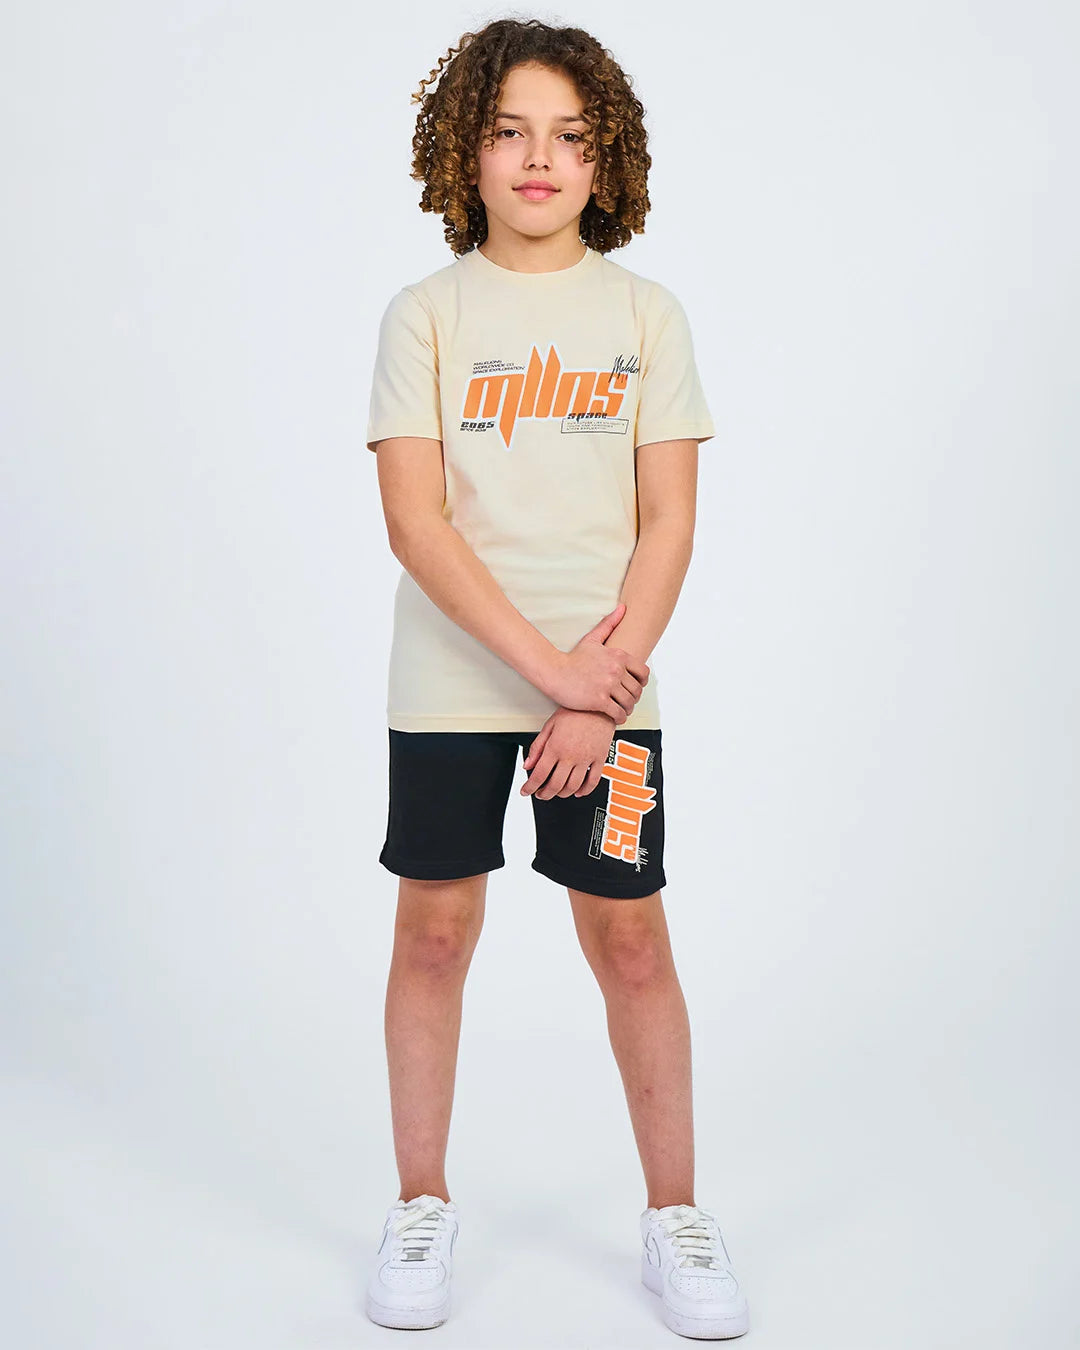 Malelions Malelions Junior Font T-Shirt